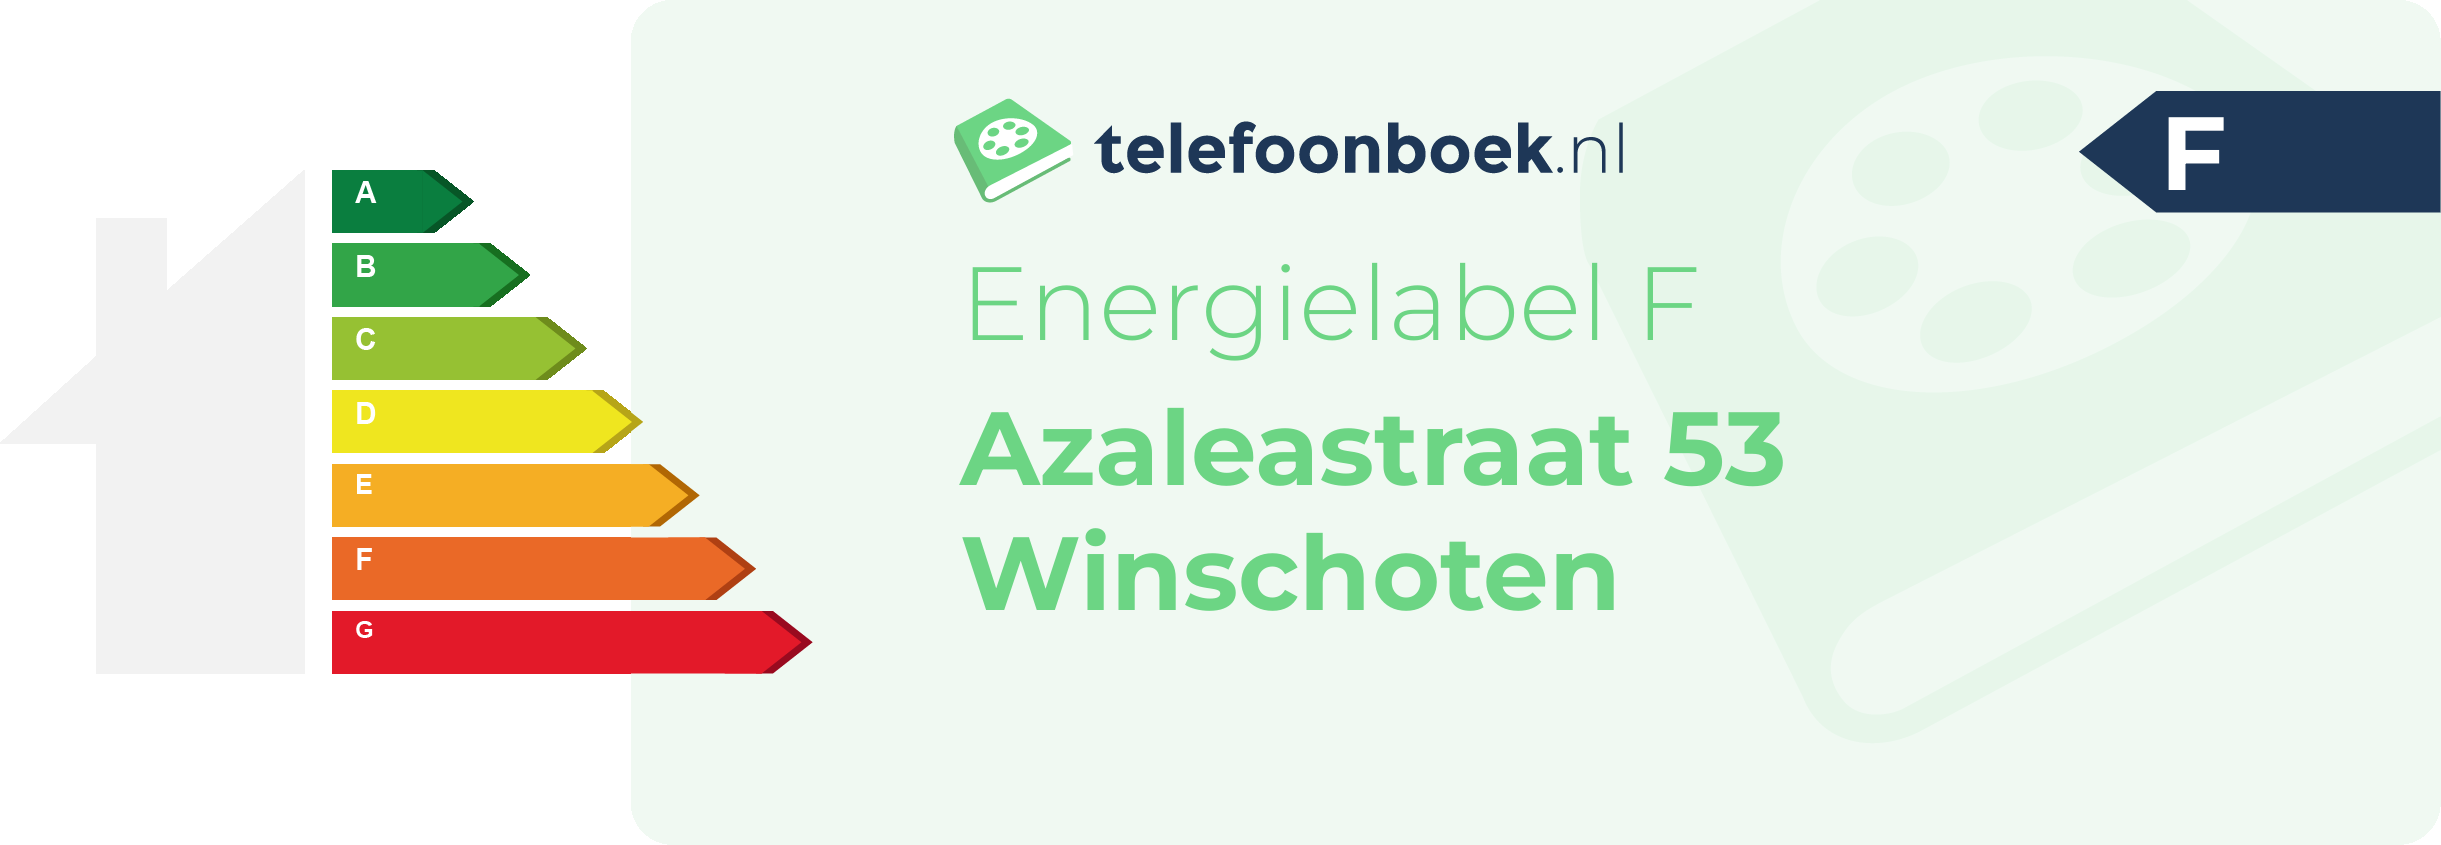 Energielabel Azaleastraat 53 Winschoten